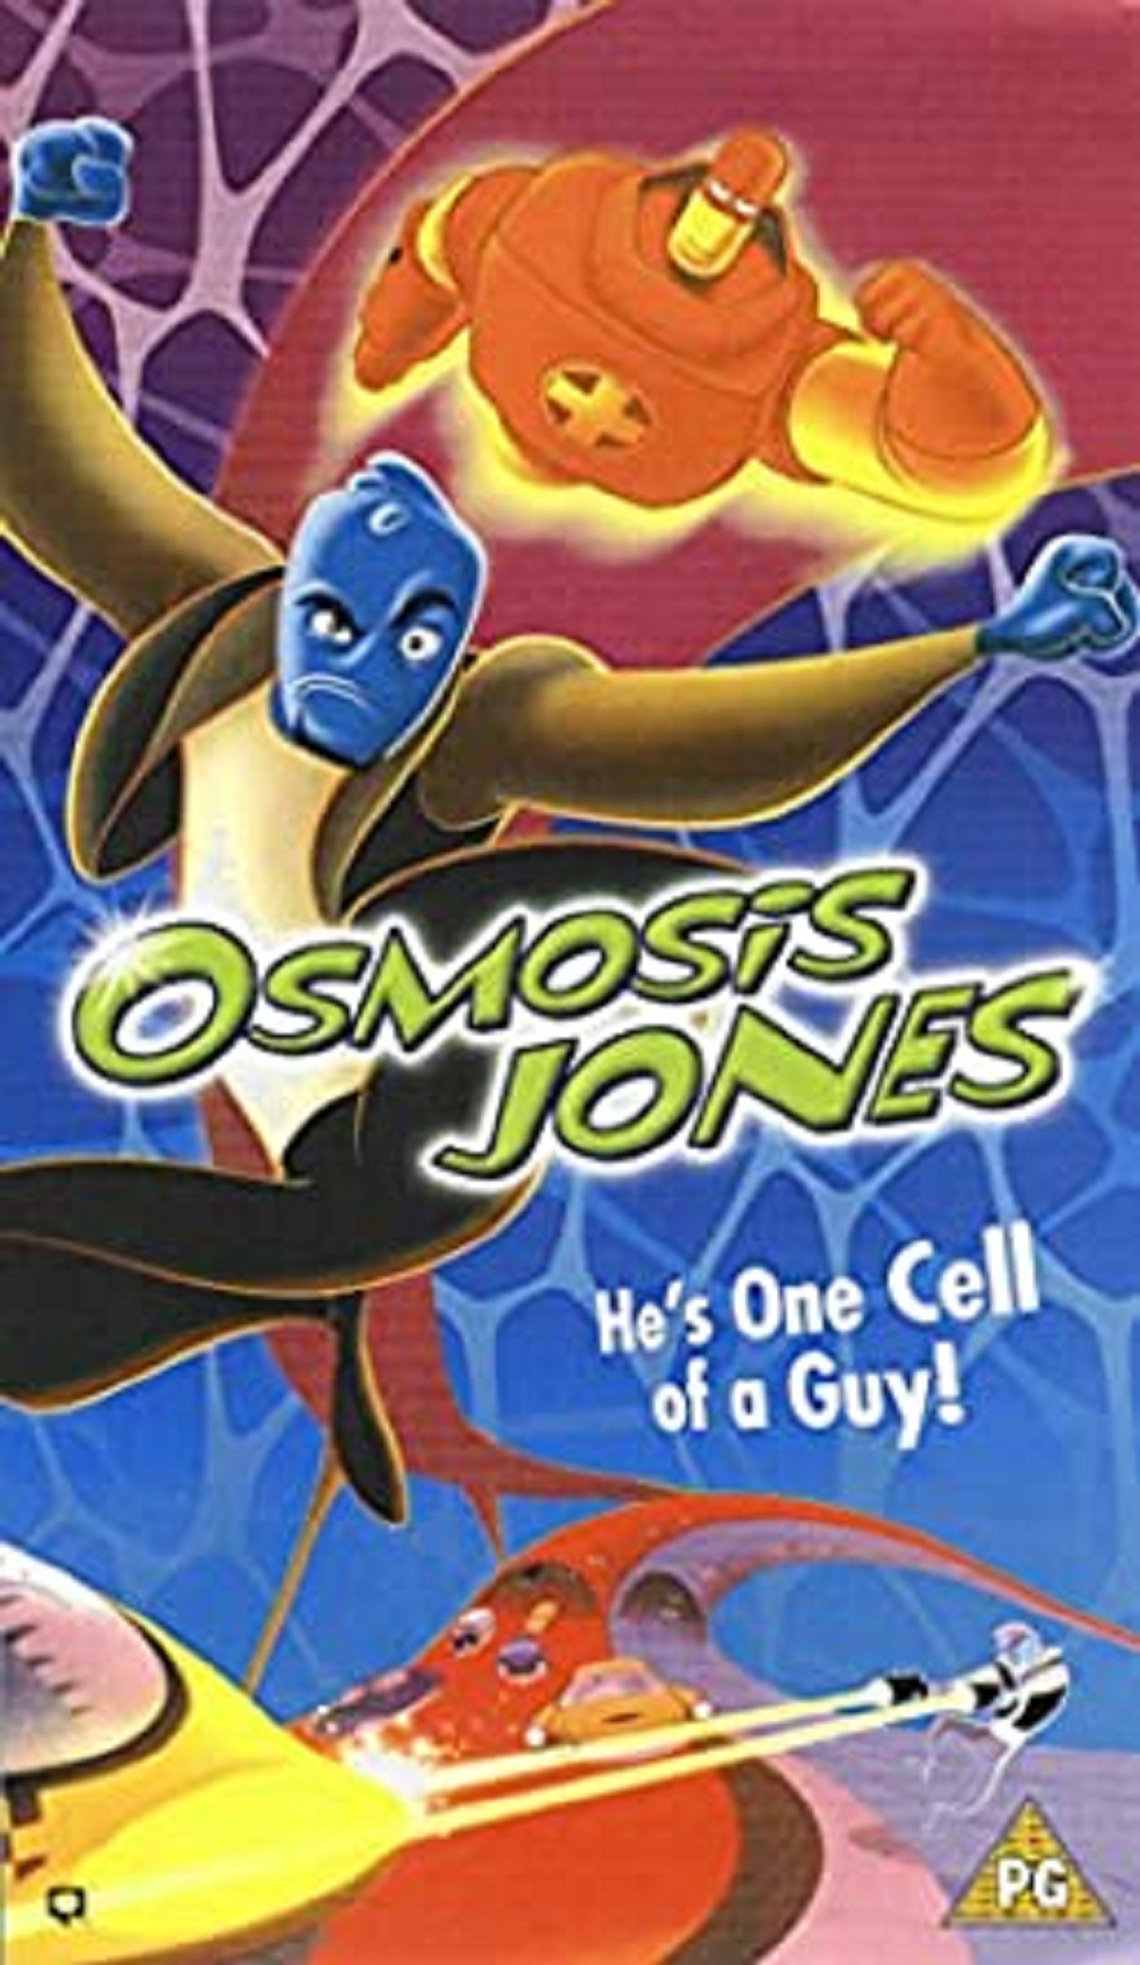 The perfect pandemic film: Osmosis Jones